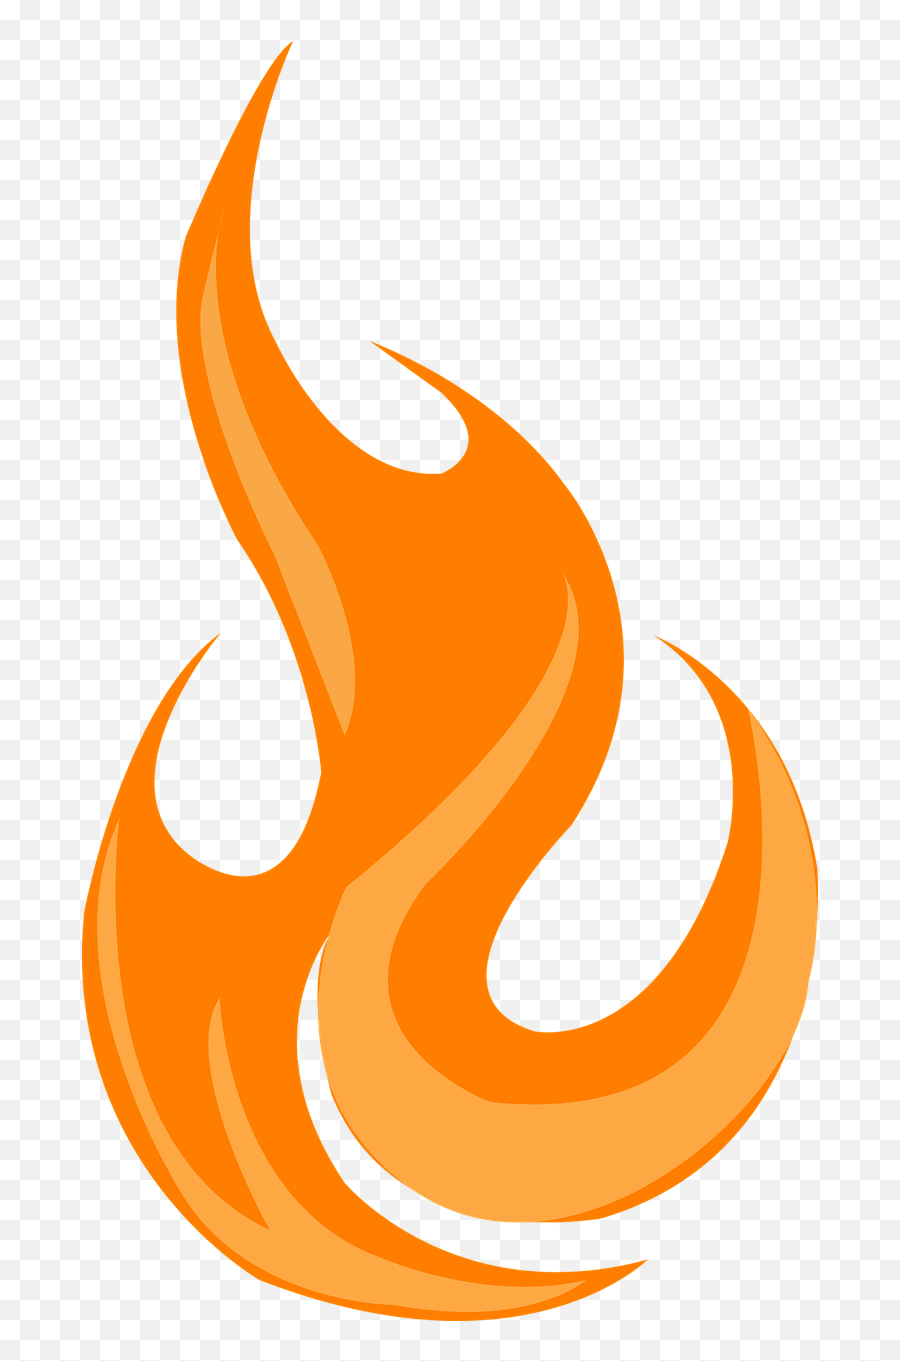 Fire Flame Icon - Fire Flame Icon Png,Flame Icon Transparent